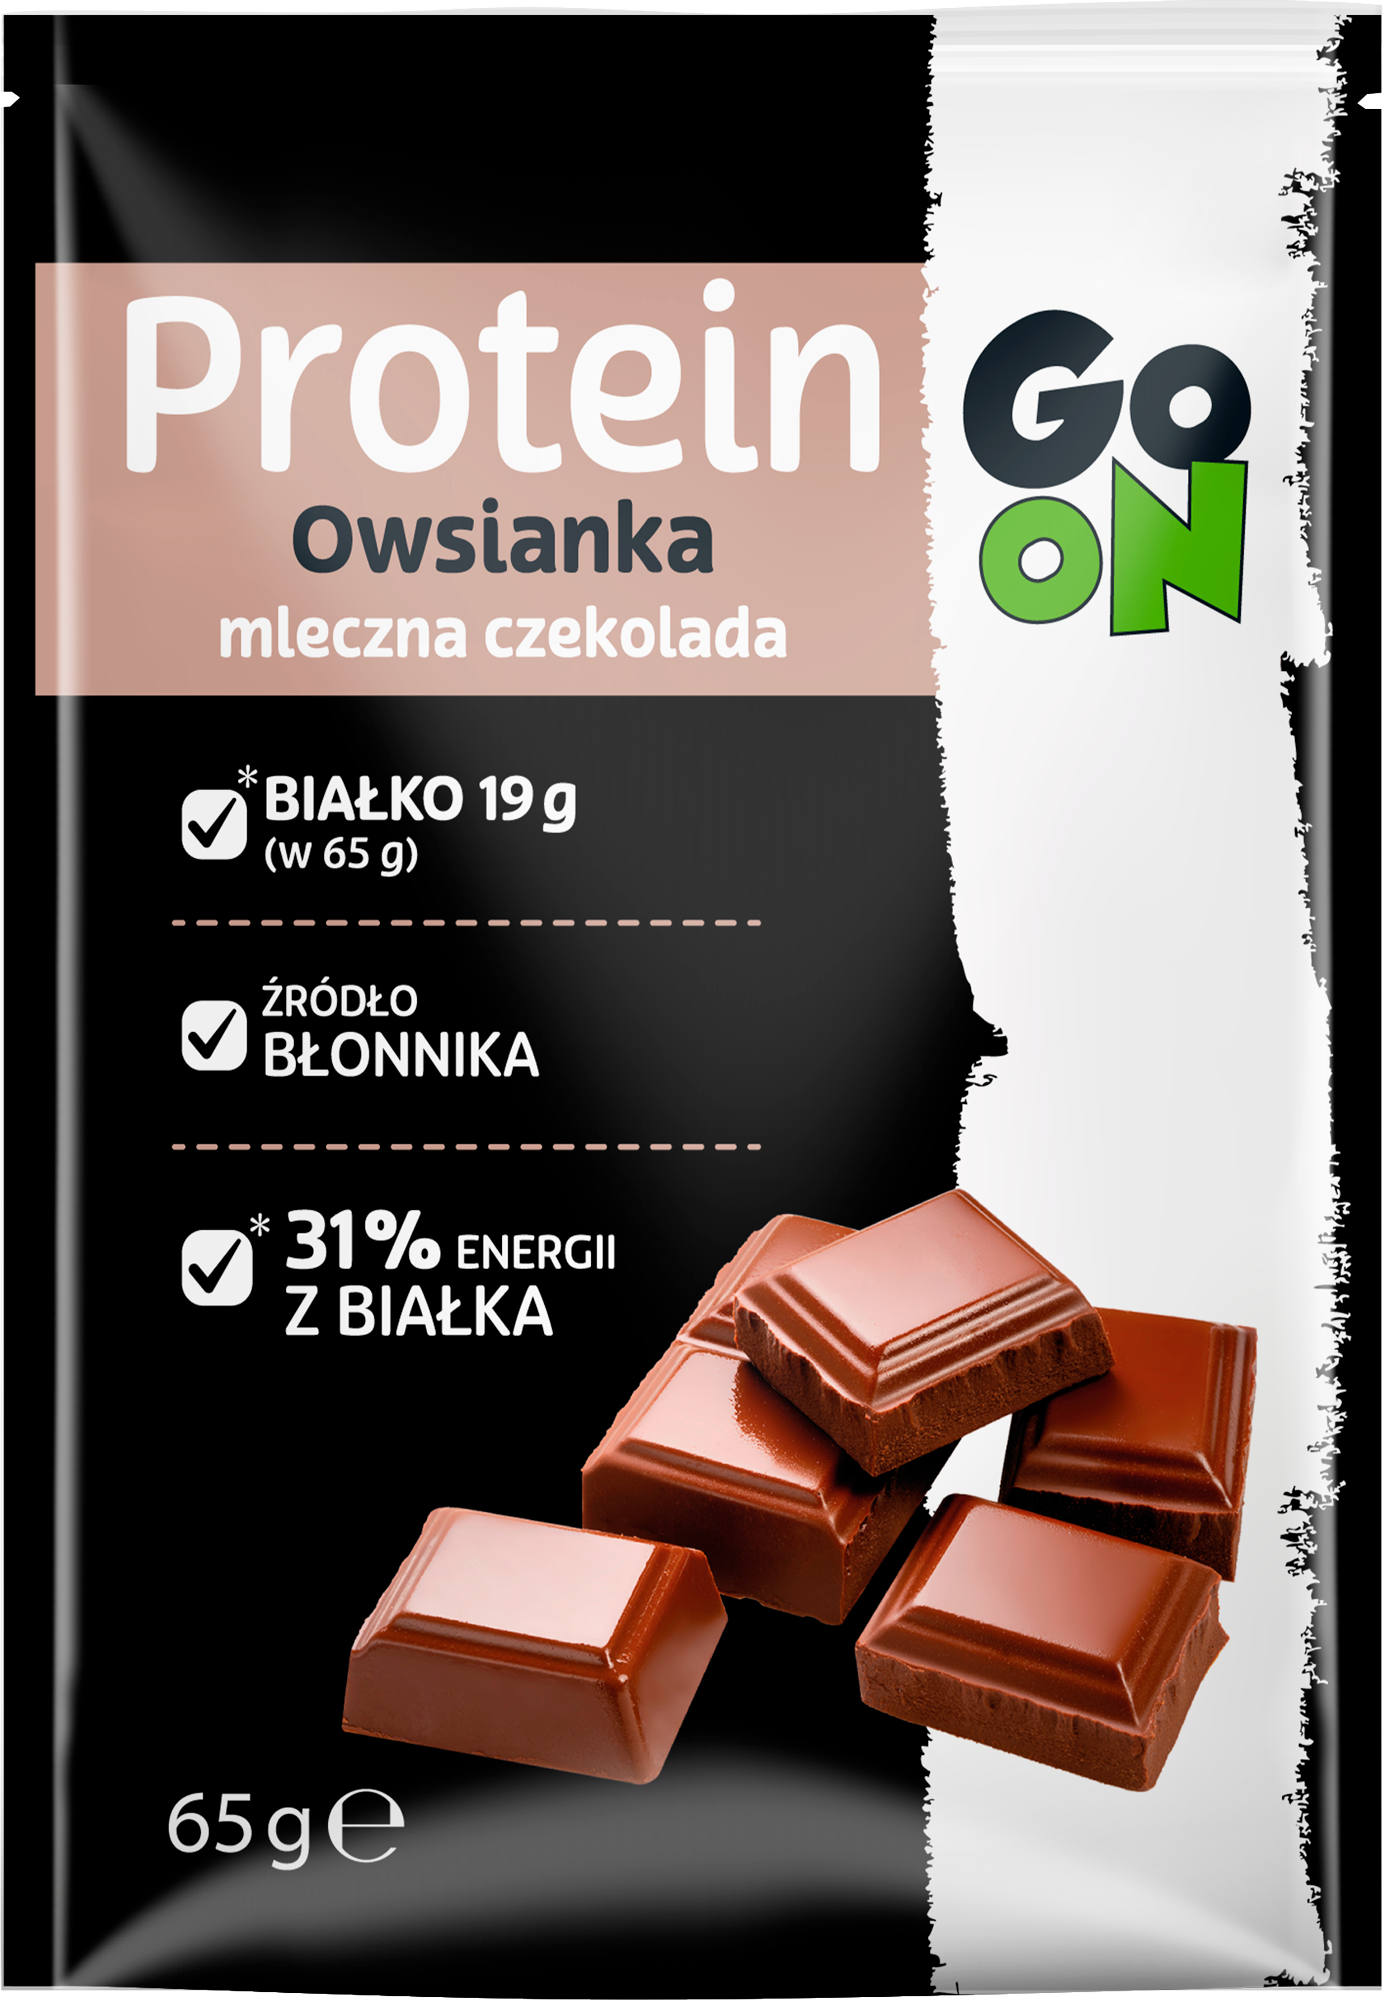 Owsianka Proteinowa z czekoladą mleczną 65 g Sante Go On